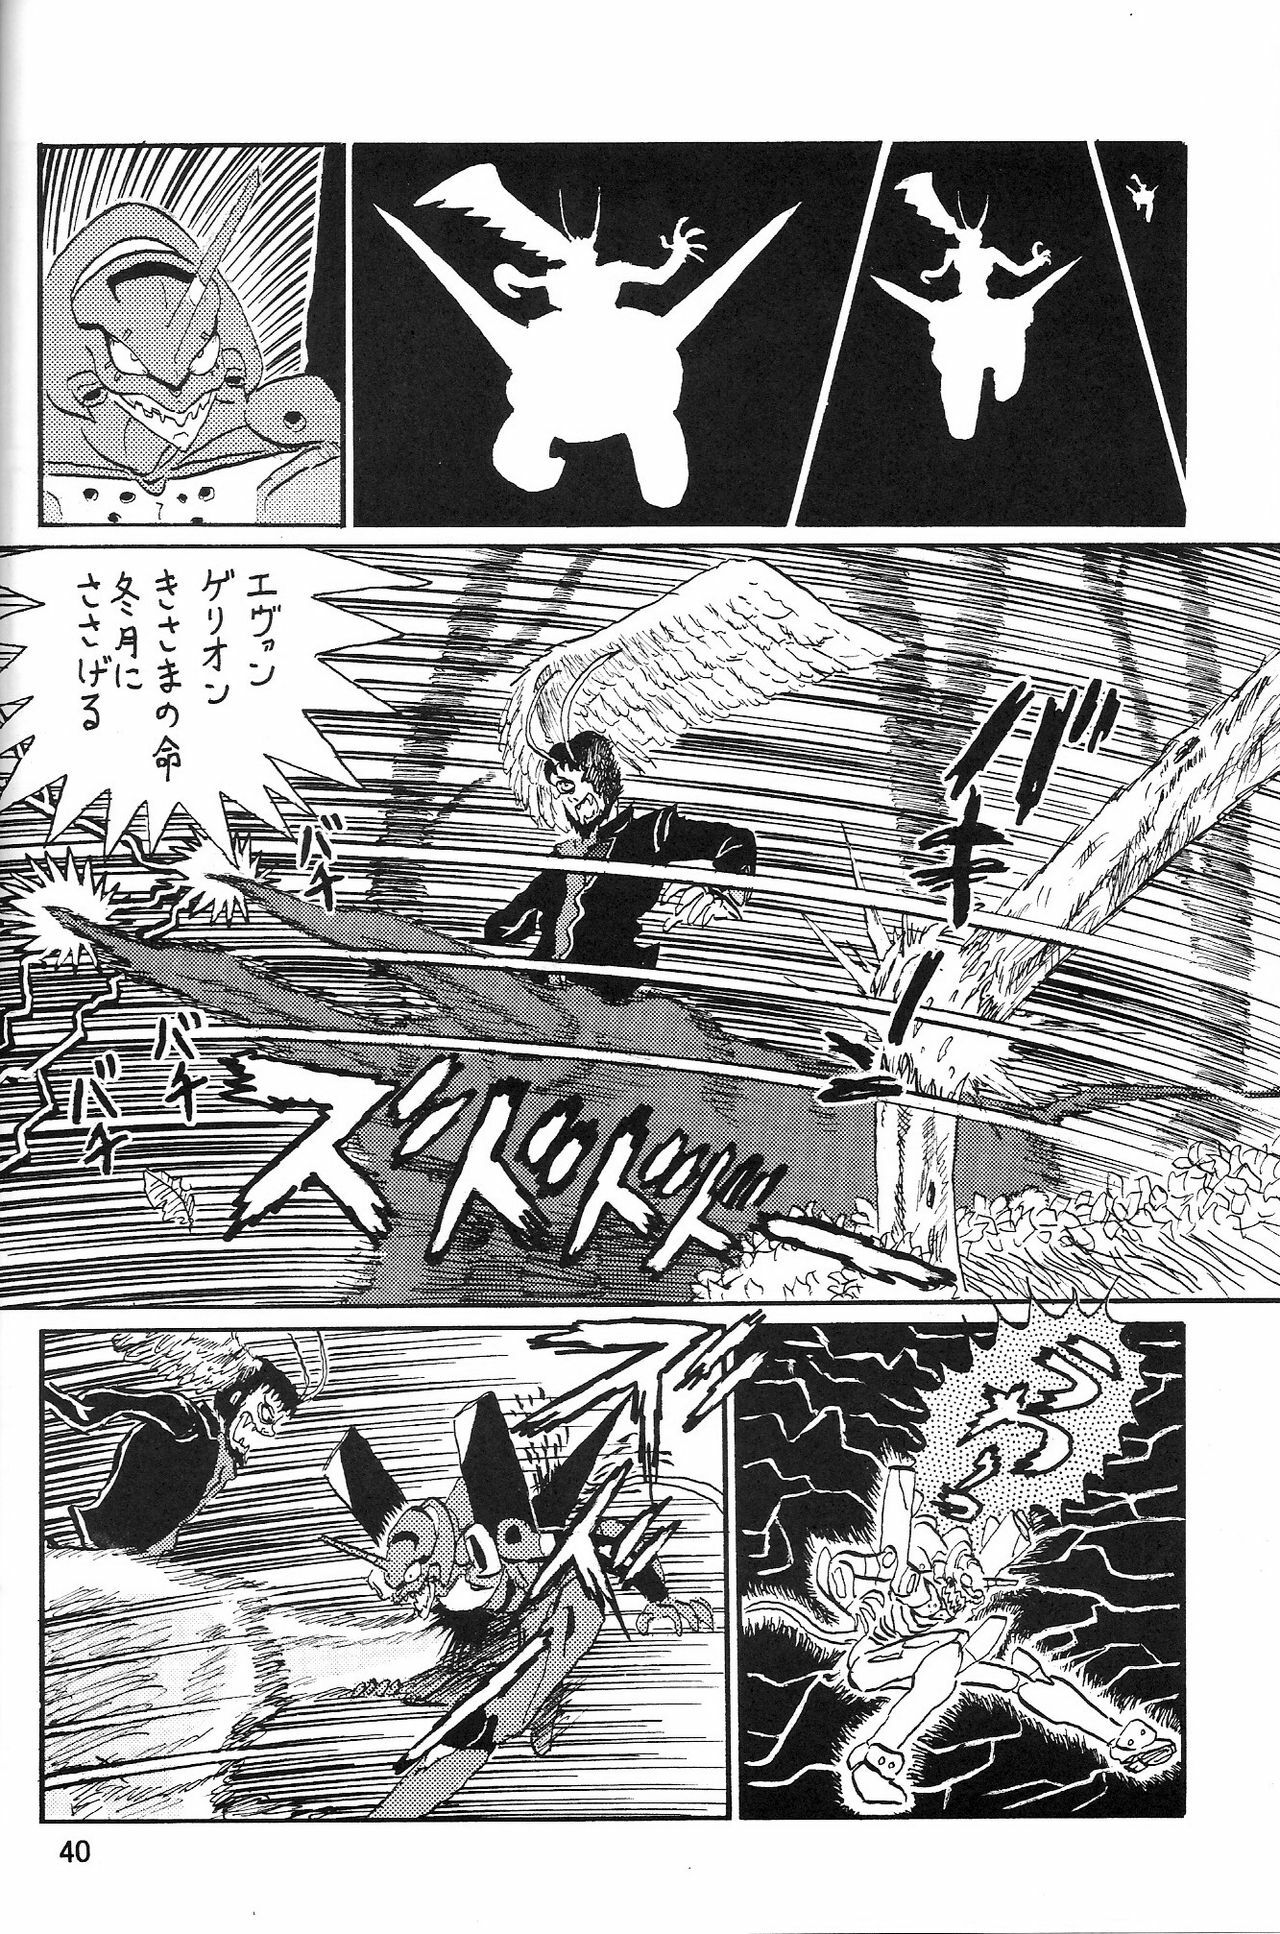 (COMIC1) [Thirty Saver Street 2D Shooting (Maki Hideto, Sawara Kazumitsu, Yonige-ya No Kyou)] Second Uchuu Keikaku 2 (Neon Genesis Evangelion) page 40 full